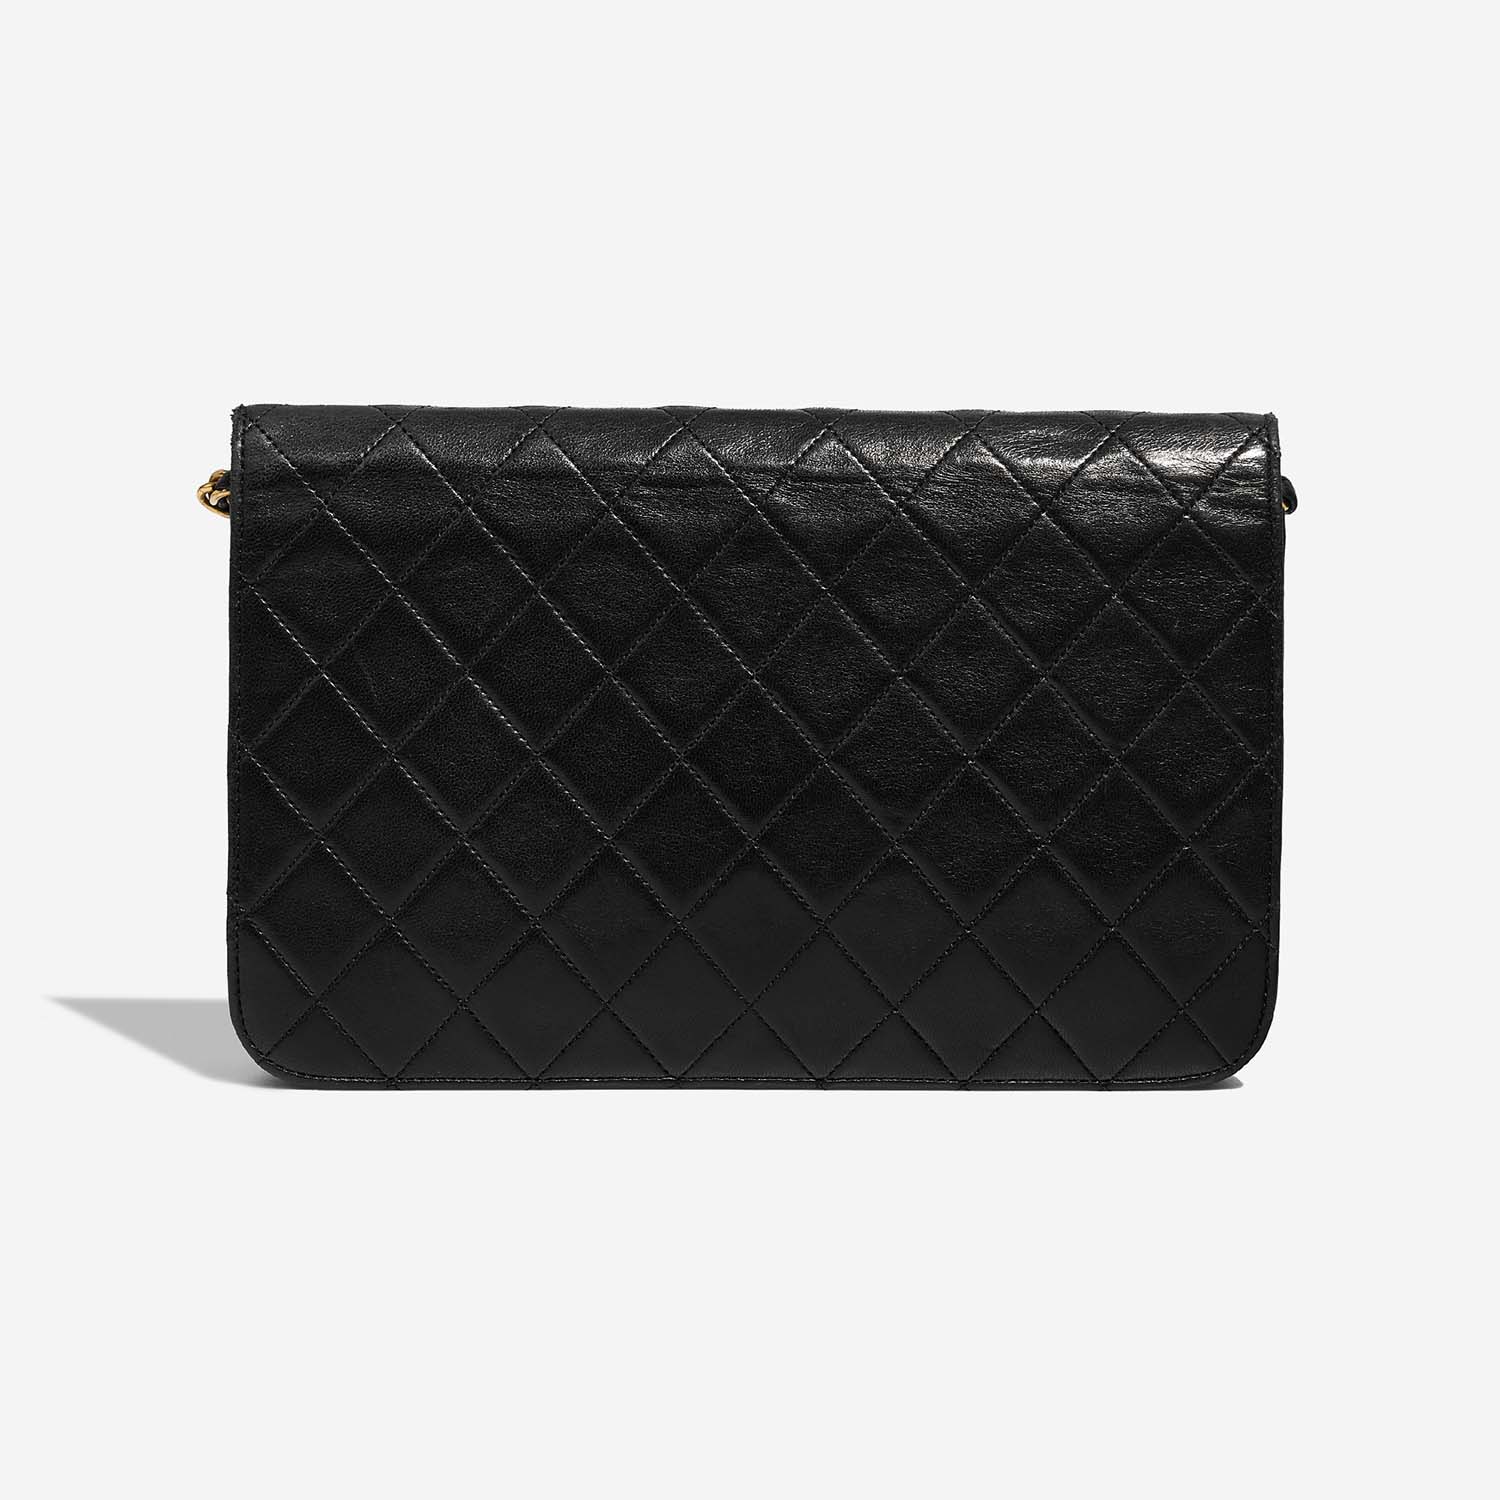 Chanel Timeless Medium Schwarz 5B S | Verkaufen Sie Ihre Designer-Tasche auf Saclab.com